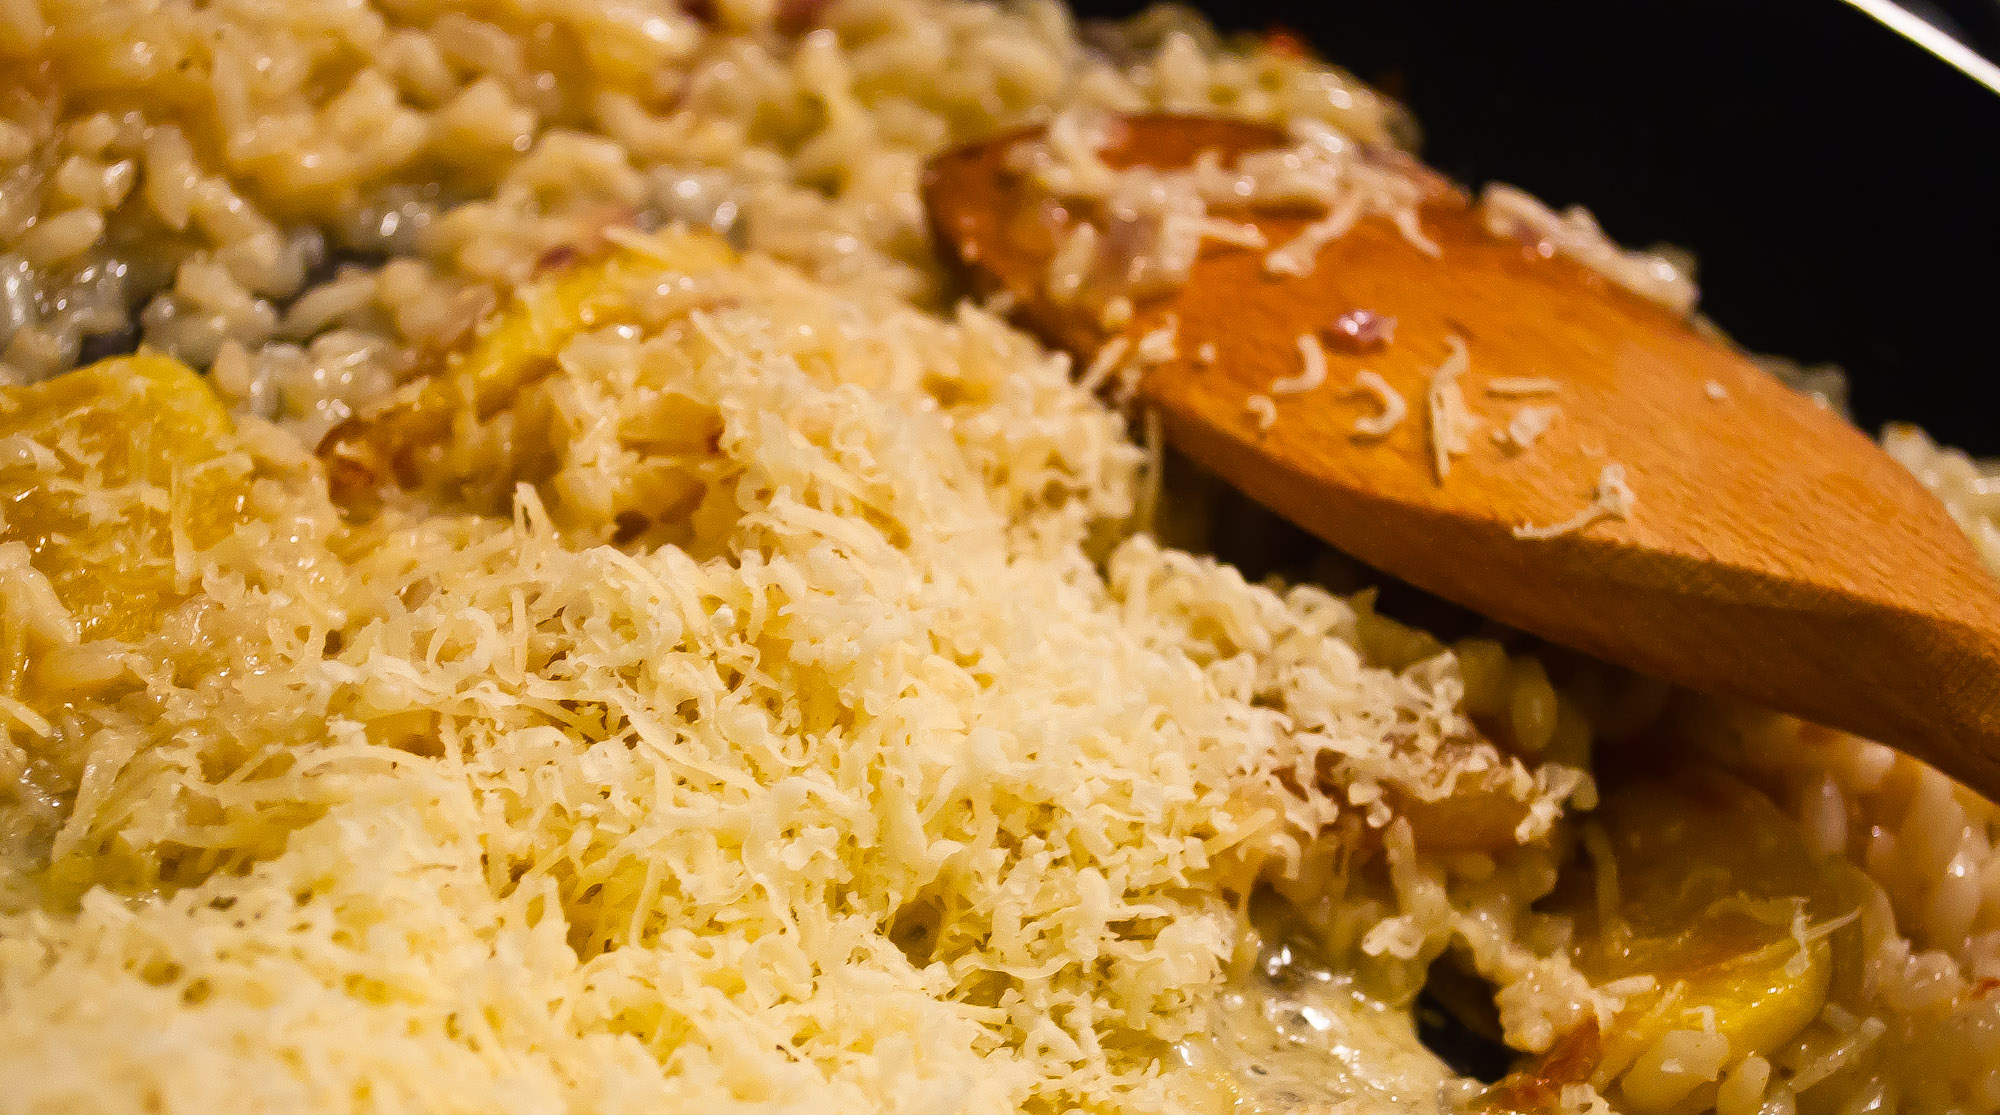 risotto: adding cheese